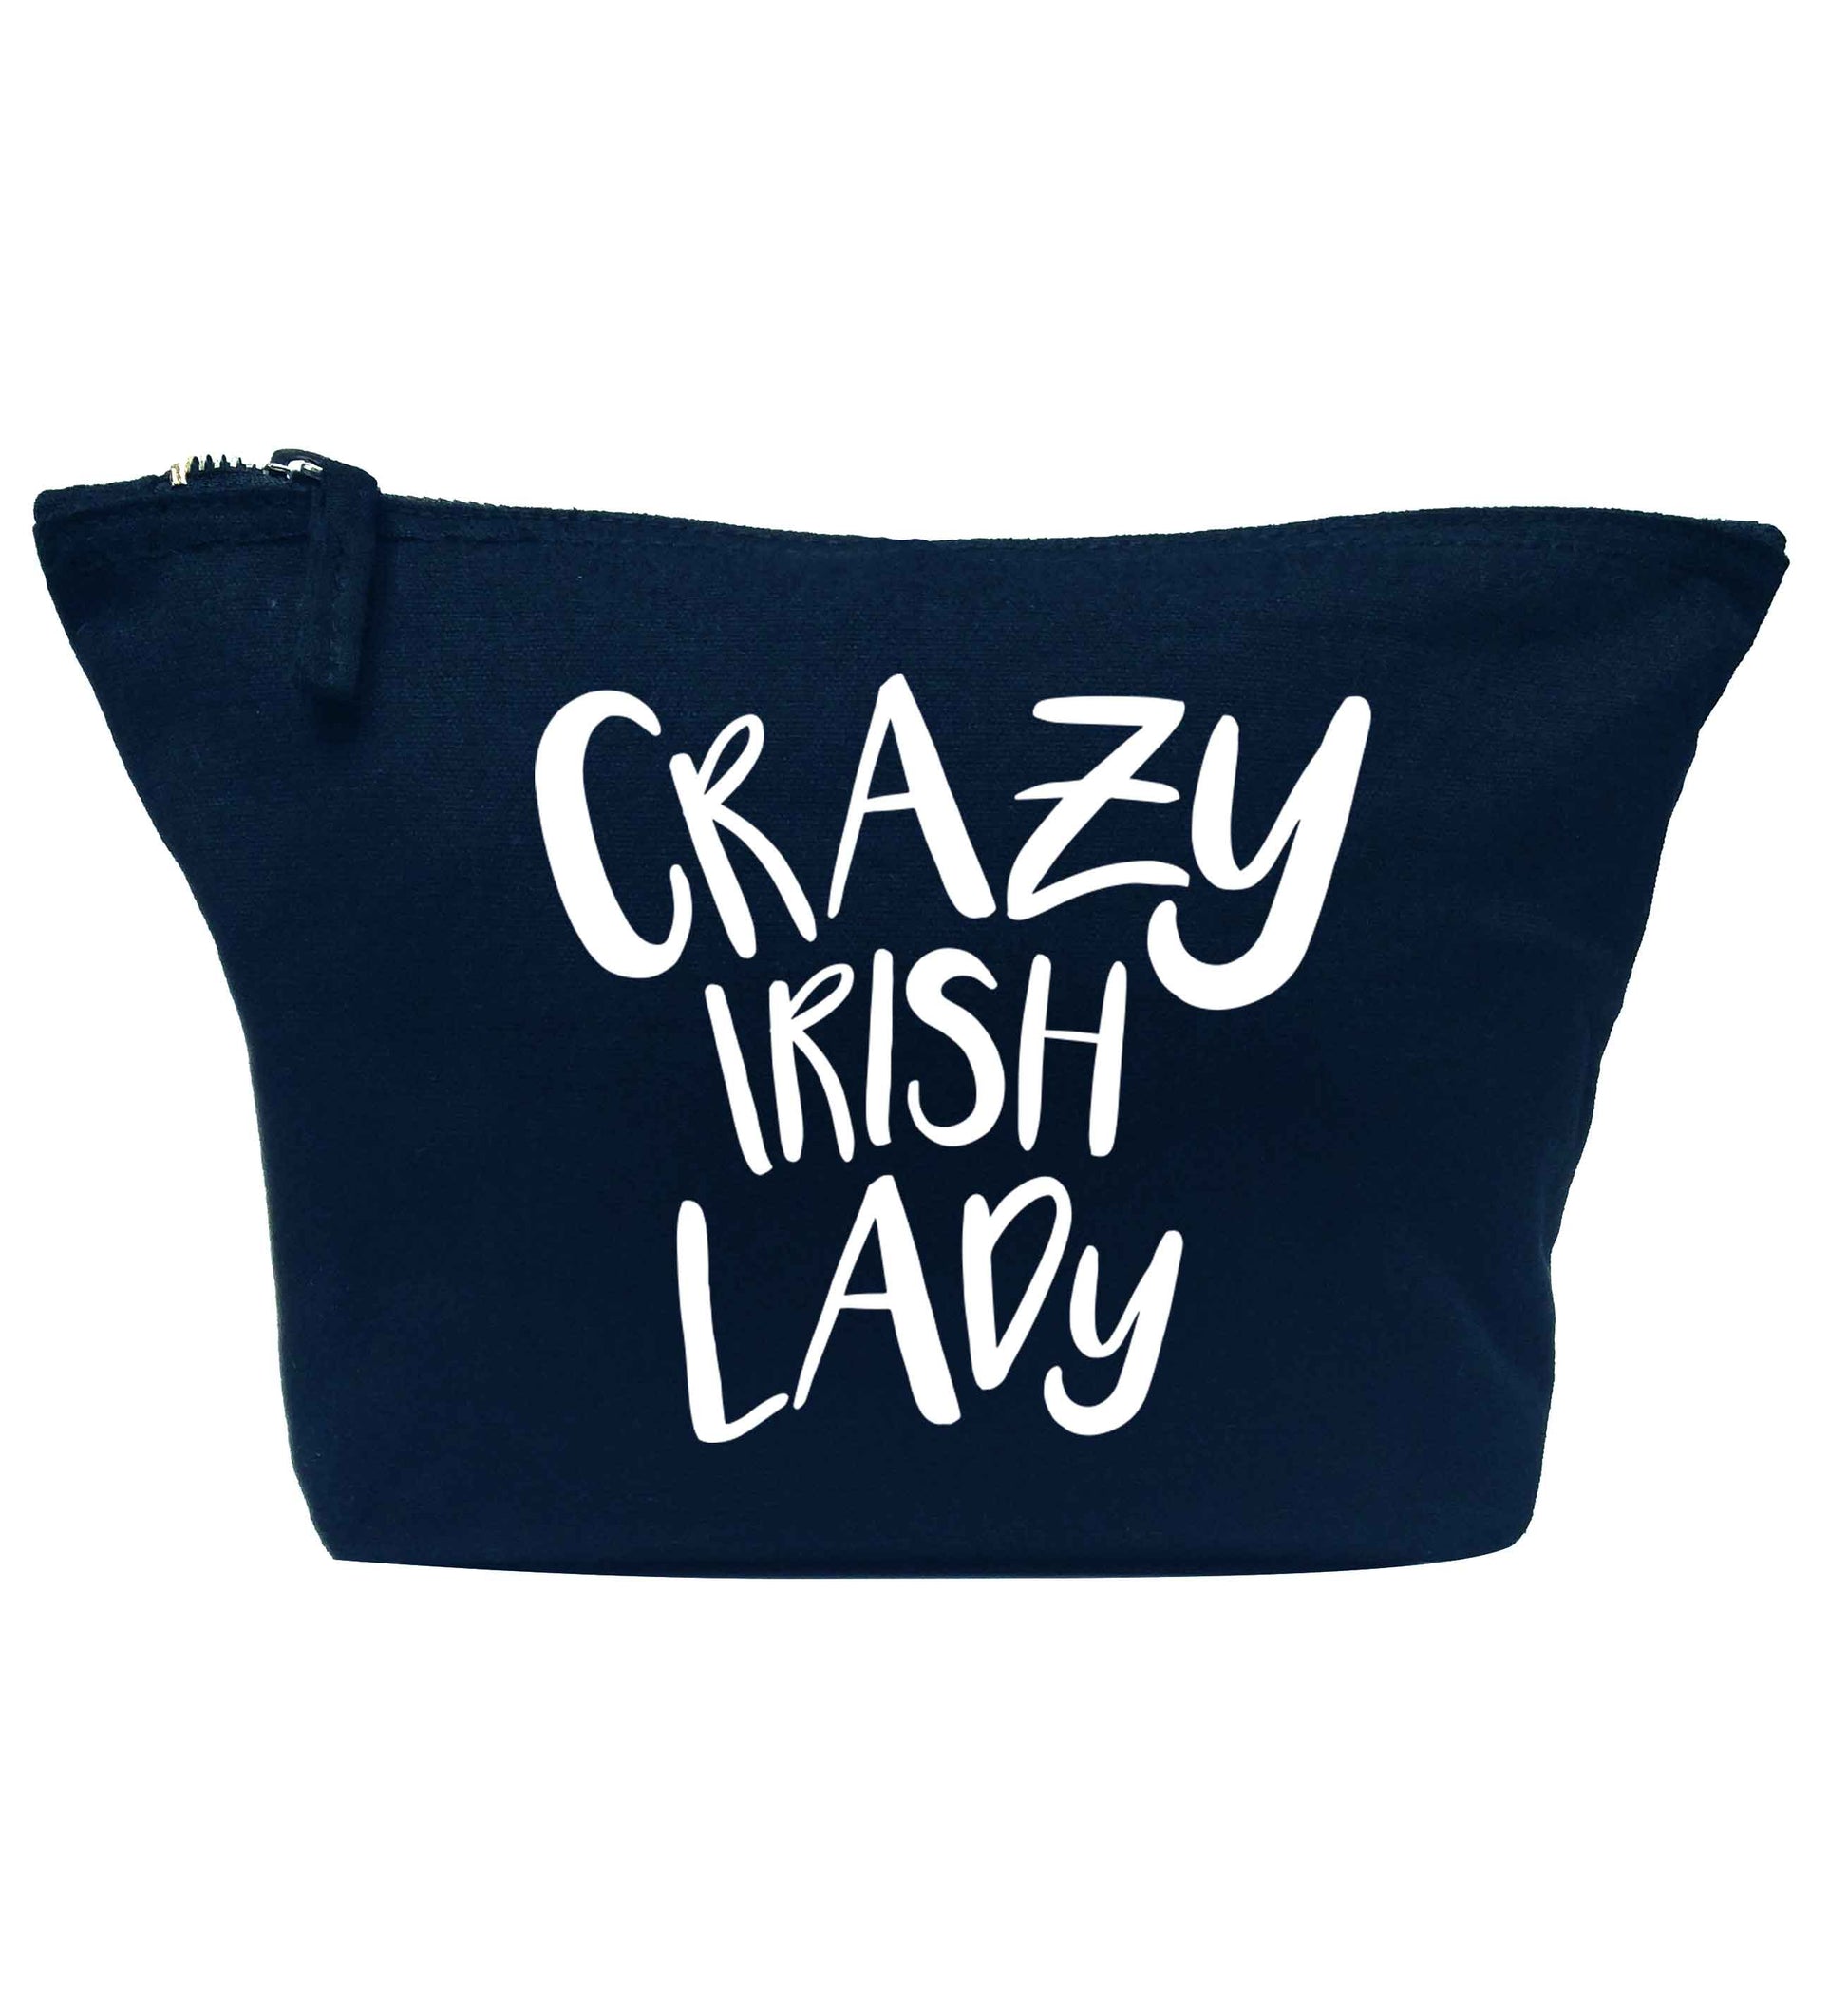 Crazy Irish lady navy makeup bag